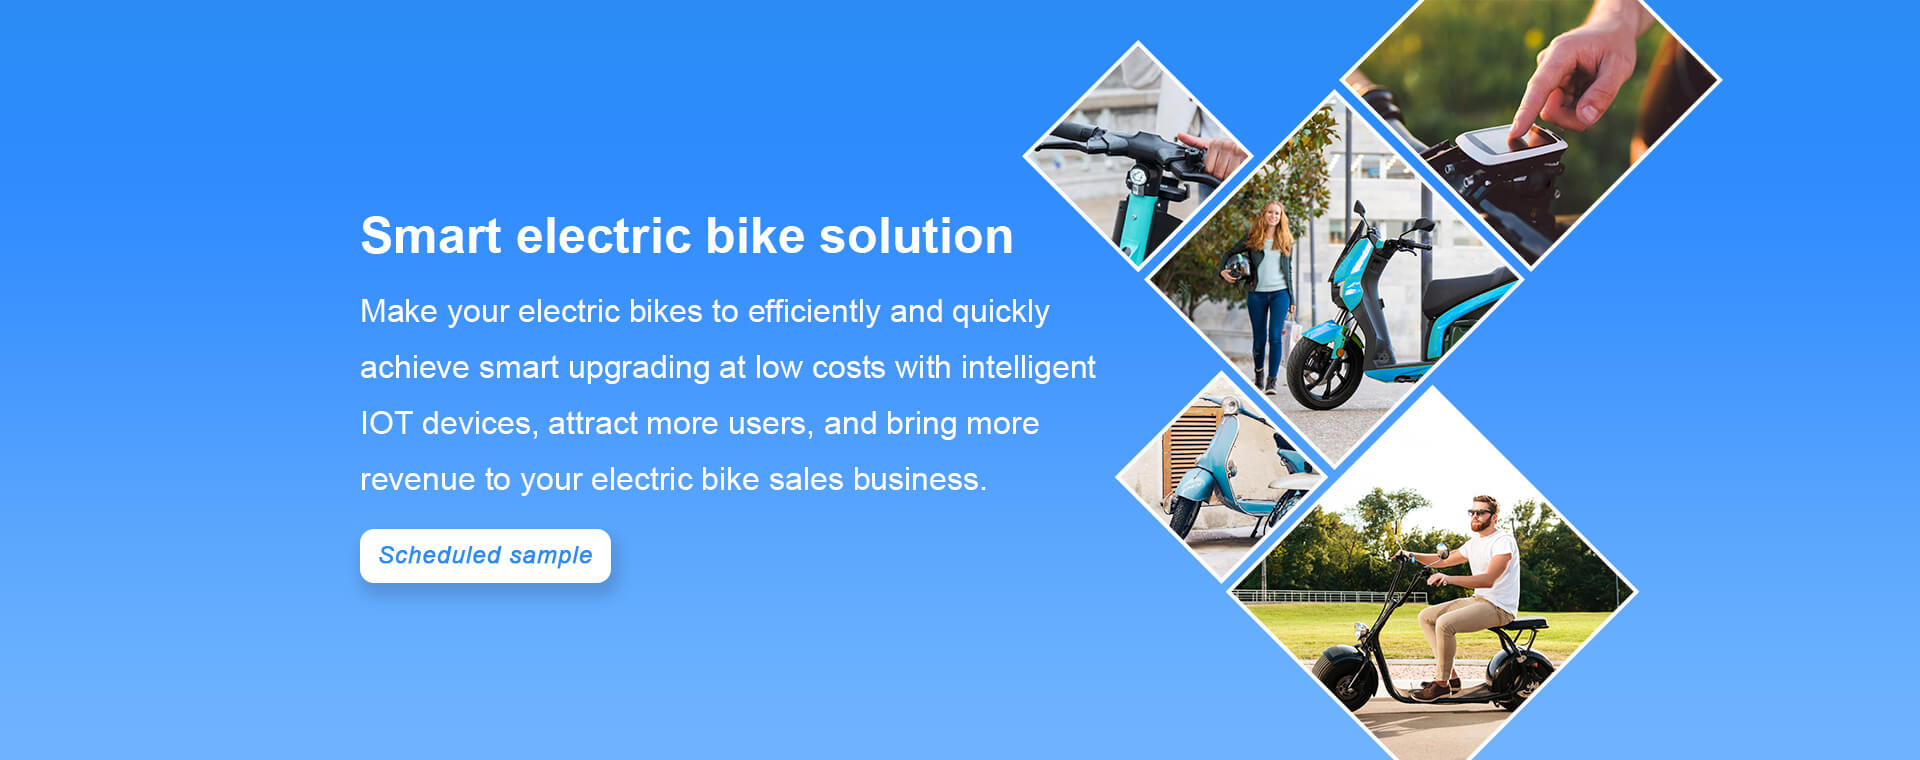 bici elettrica intelligente